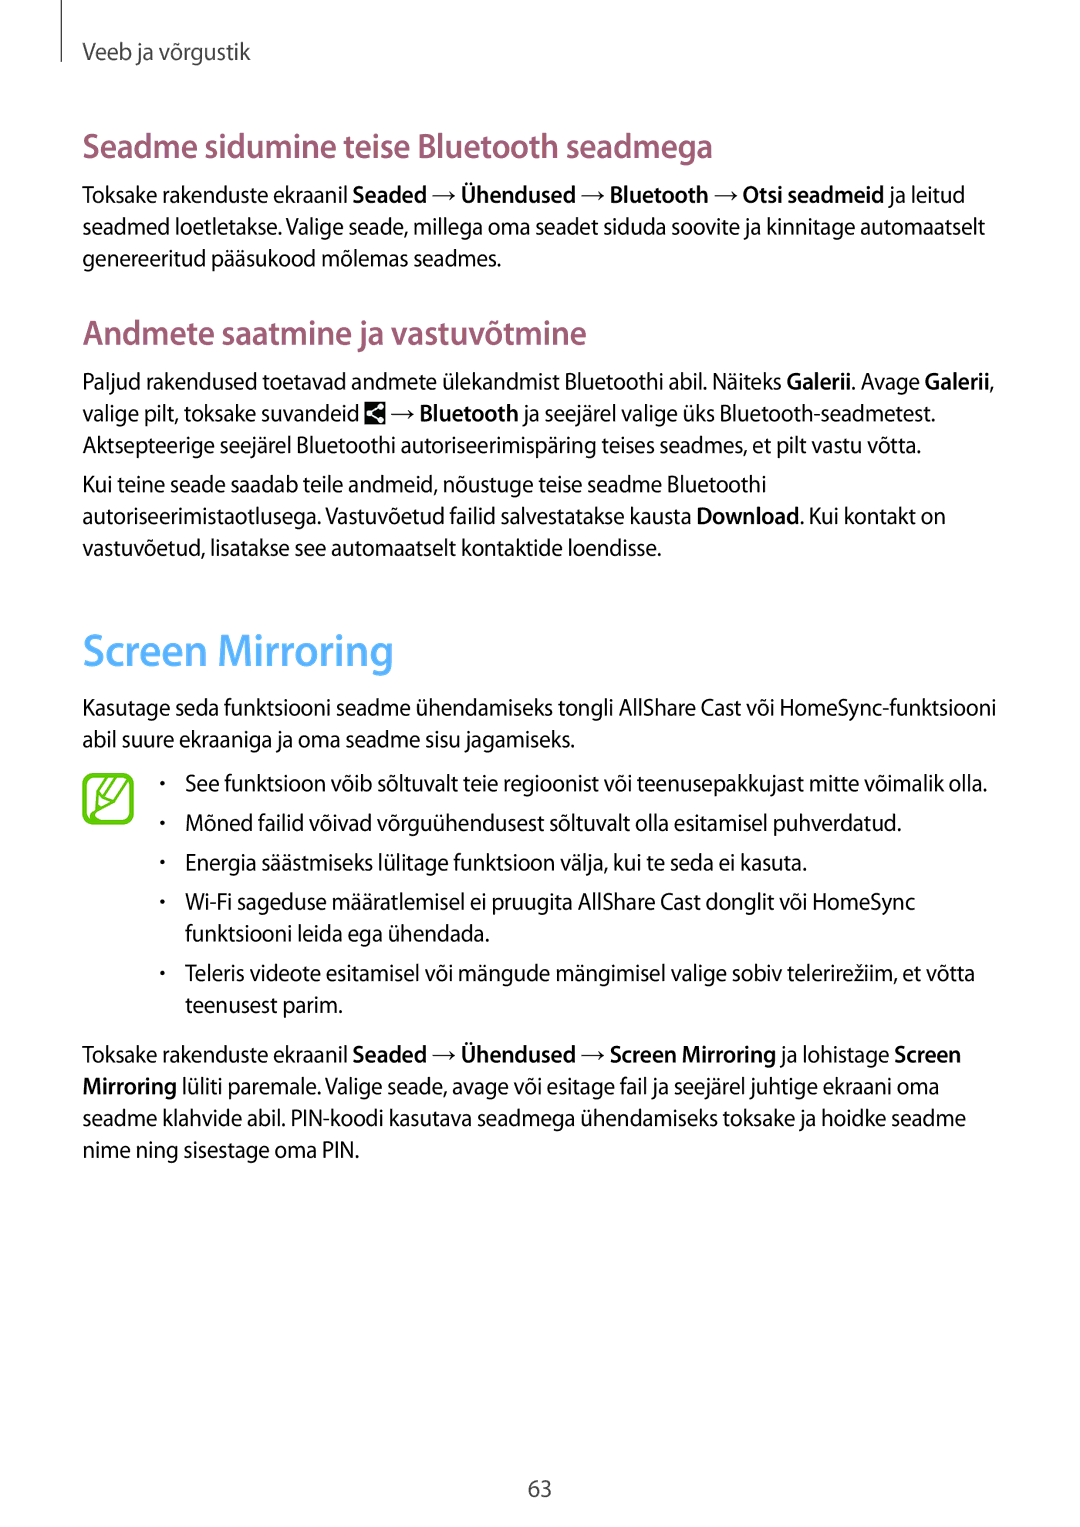 Samsung SM-T365NNGASEB manual Screen Mirroring, Seadme sidumine teise Bluetooth seadmega, Andmete saatmine ja vastuvõtmine 